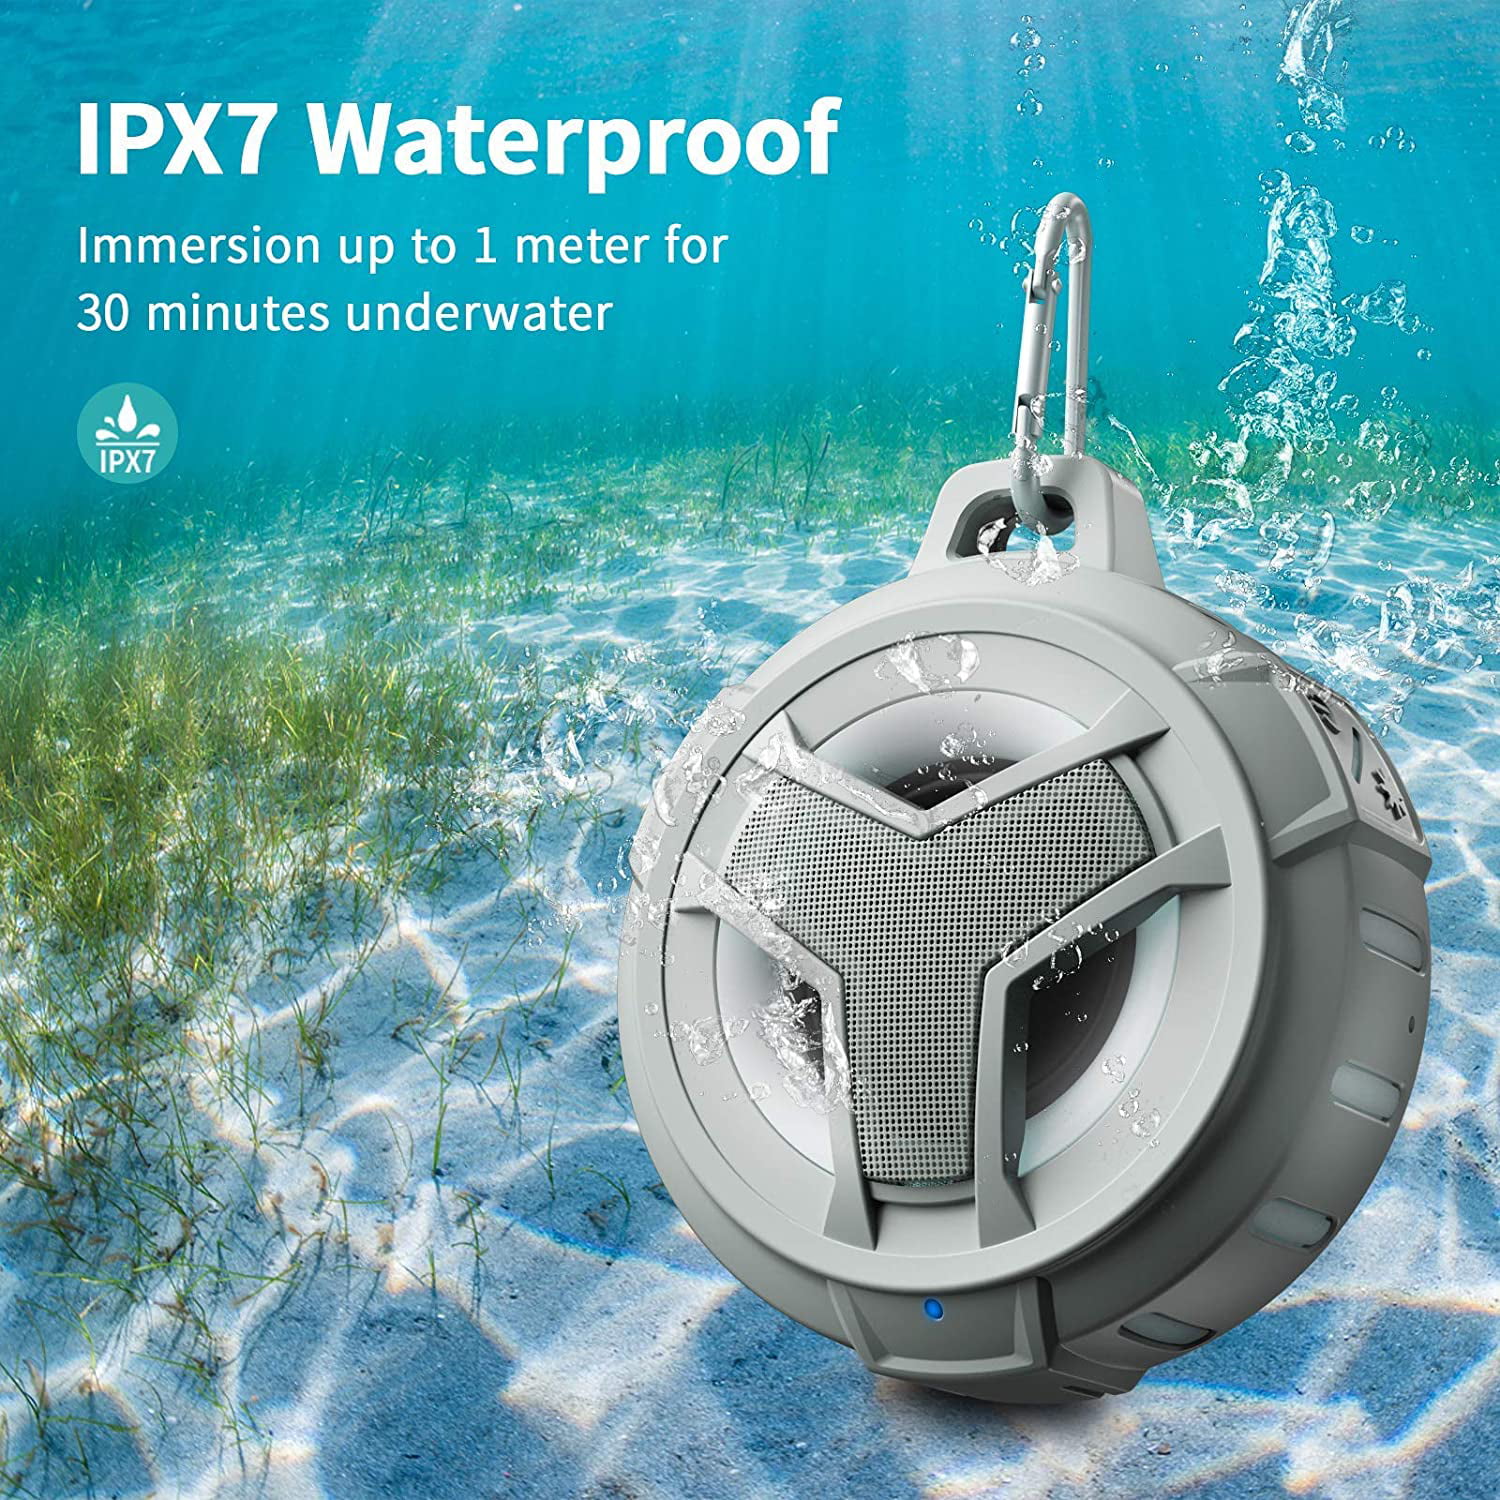 IP67 Waterproof Outdoor Speaker Wireless with LED Light Beach Pool Bike -Black TWS Waterproof Portable Bluetooth Speakers Floating Hands-Free for Shower EBODA Bluetooth Shower Speaker 2000mAh